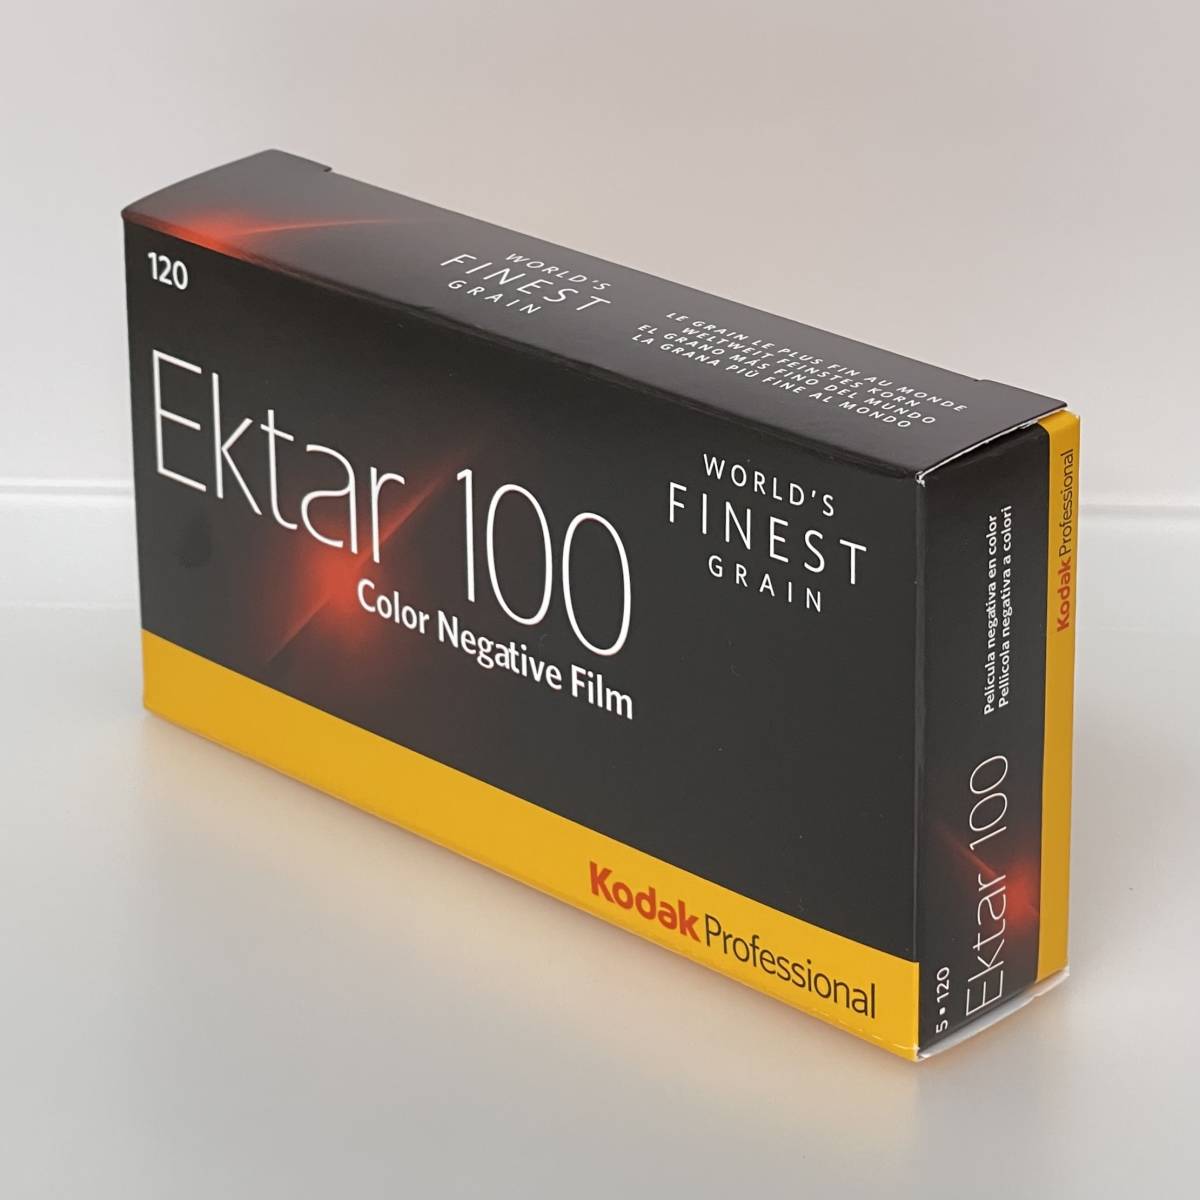 安い正本  5本パック 120 Ektar（エクター）100 Kodak コダック その他